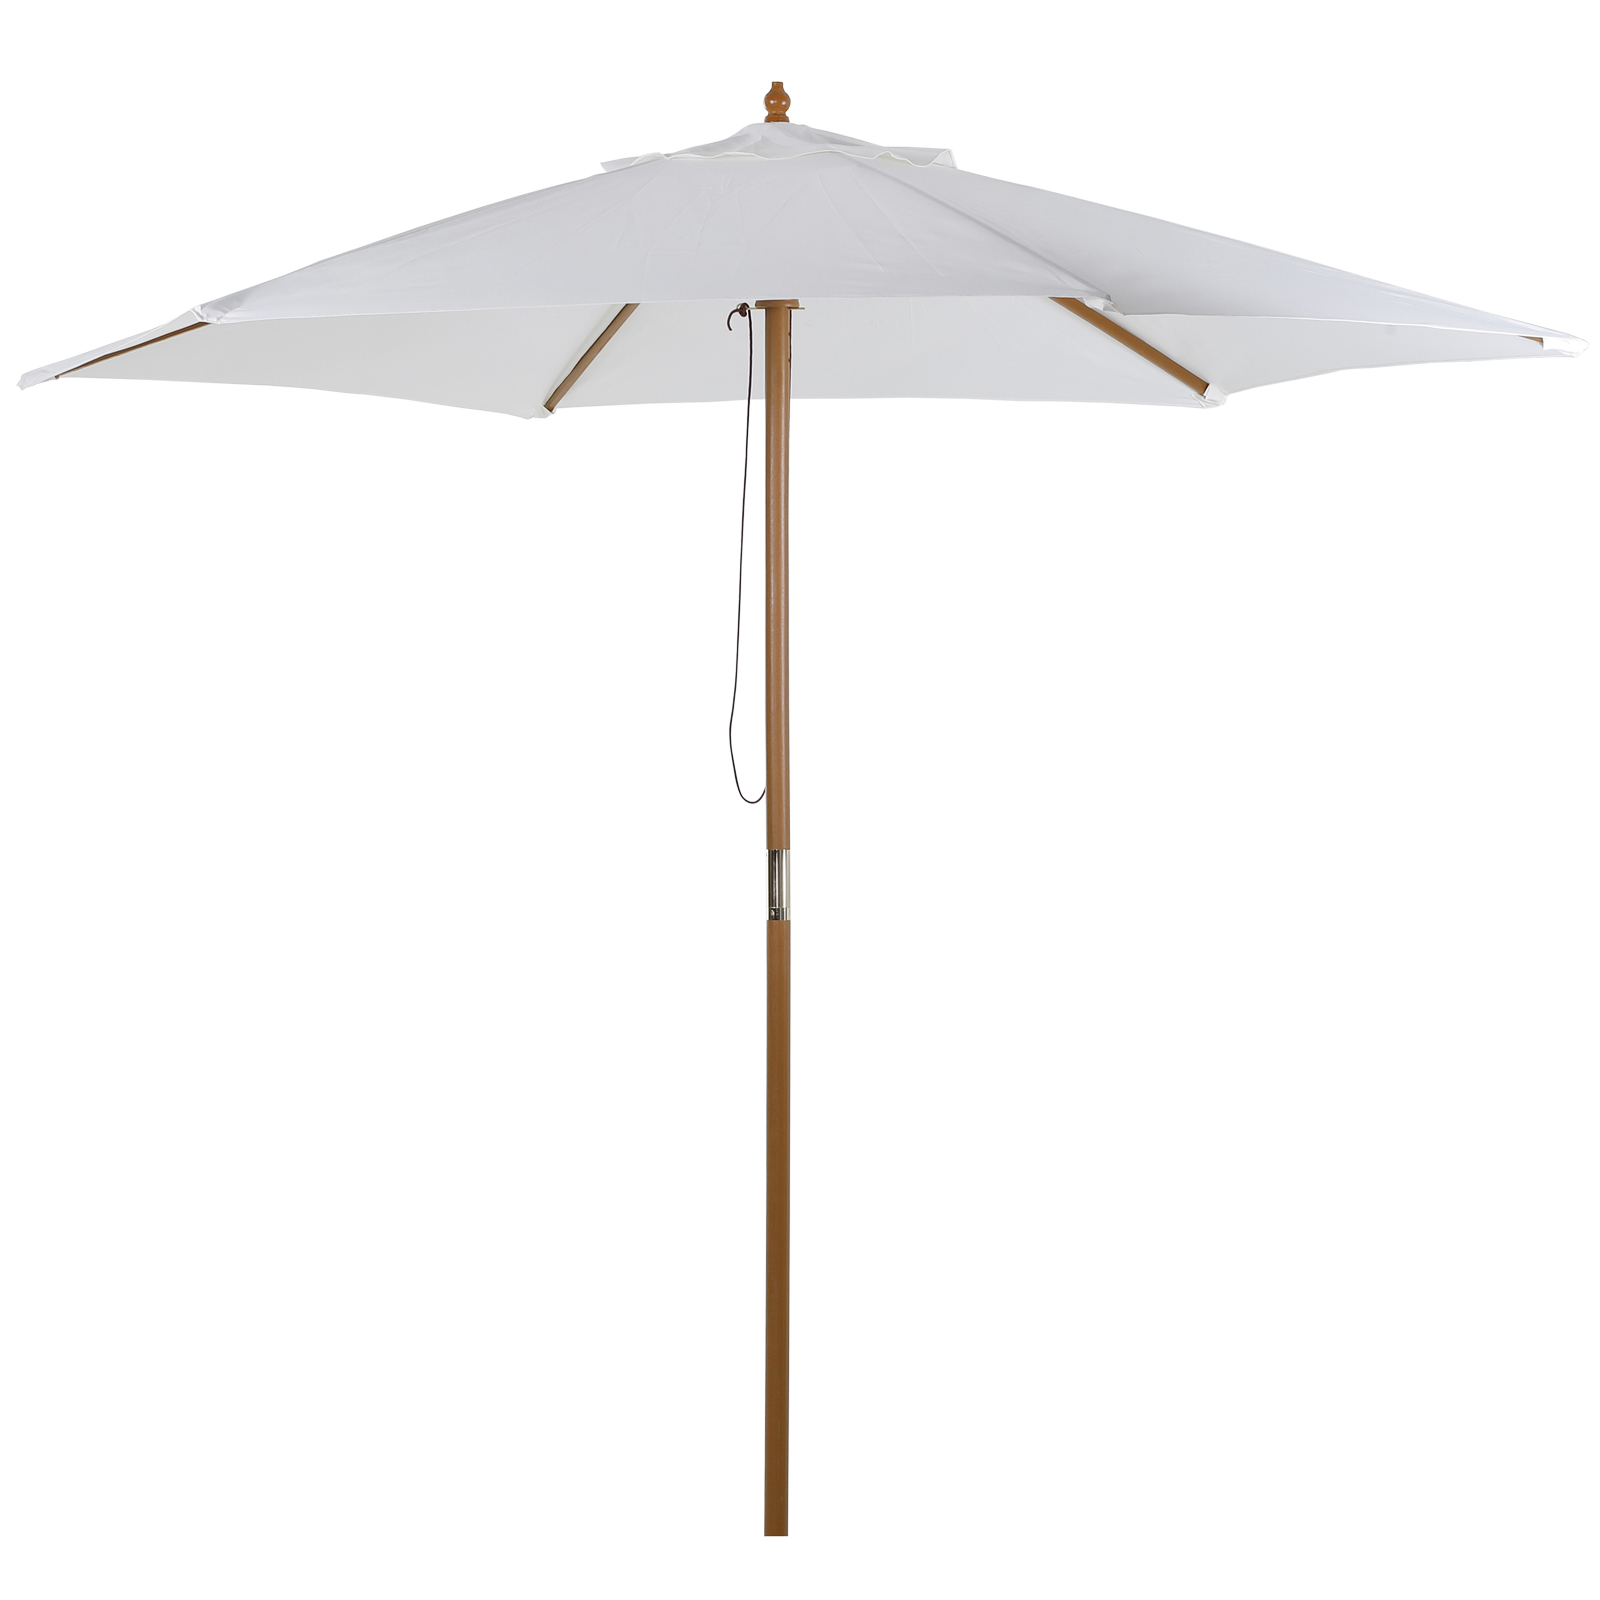 Outsunny Bamboo Garden Umbrella